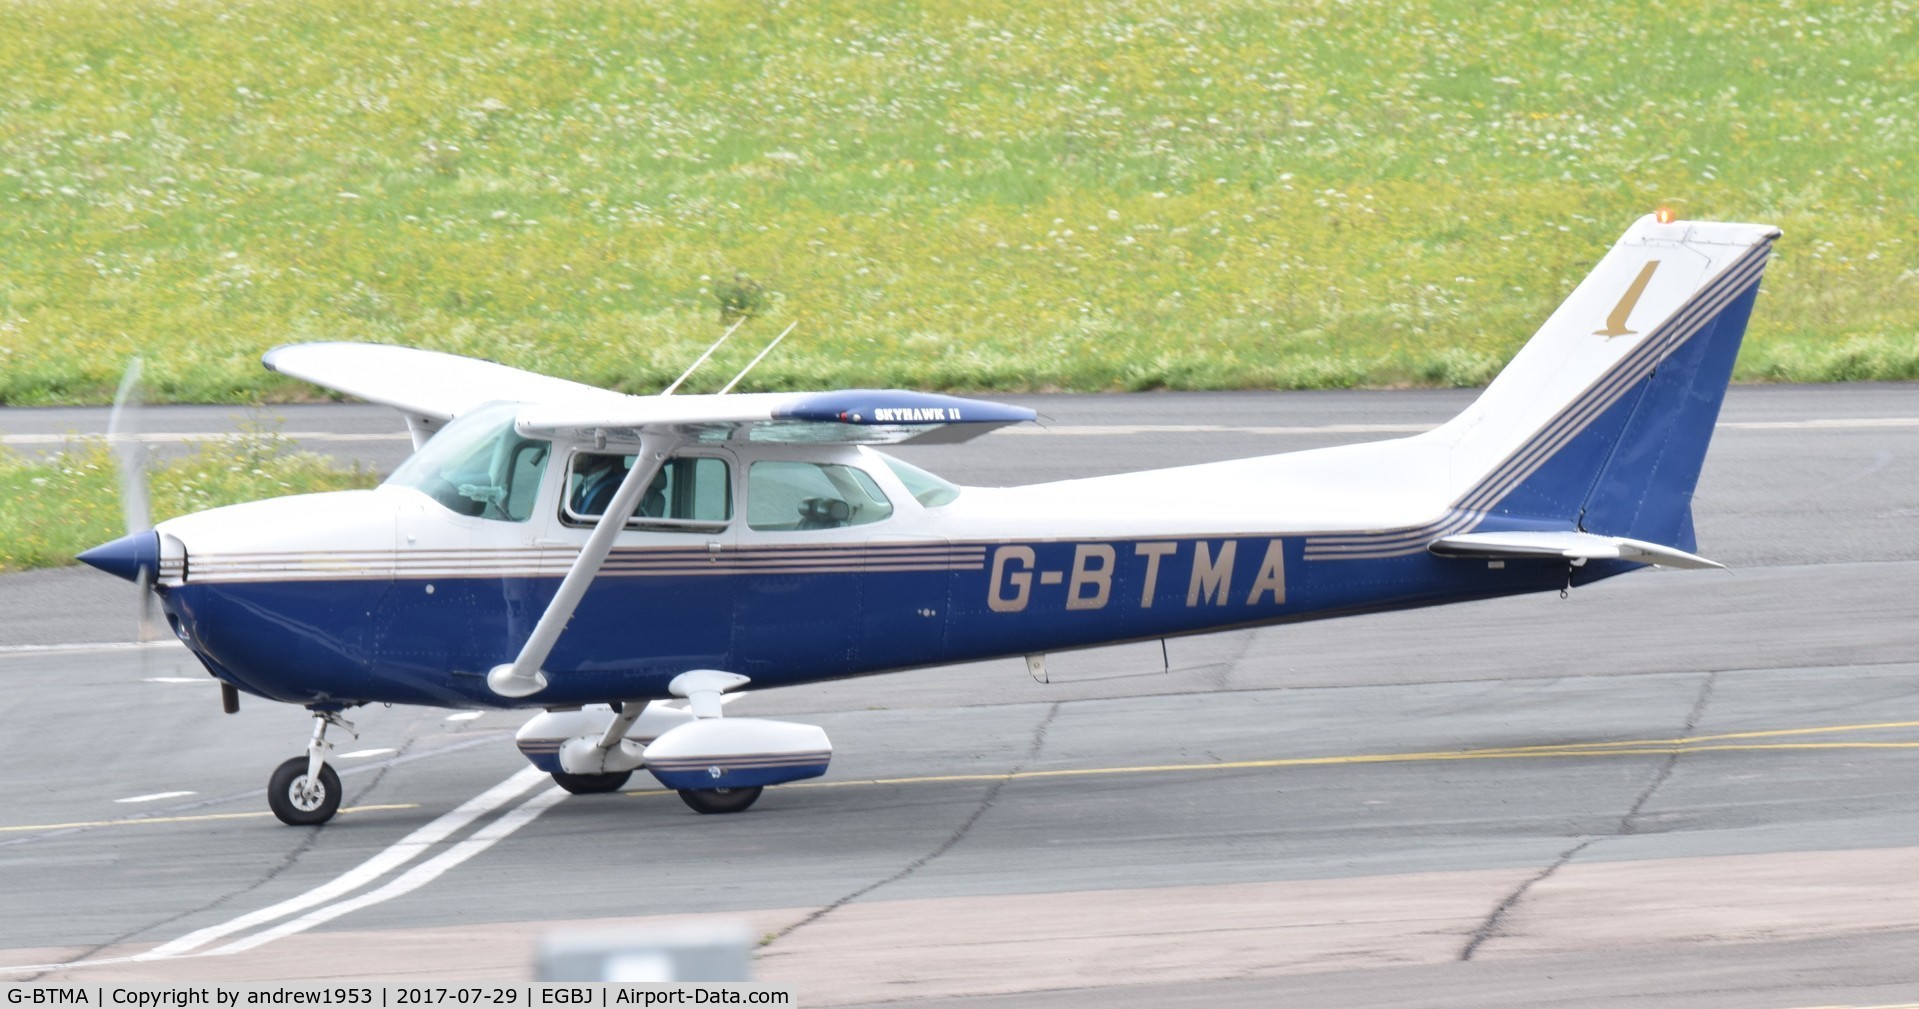 G-BTMA, 1980 Cessna 172N C/N 172-73711, G-BTMA at Gloucestershire Airport.